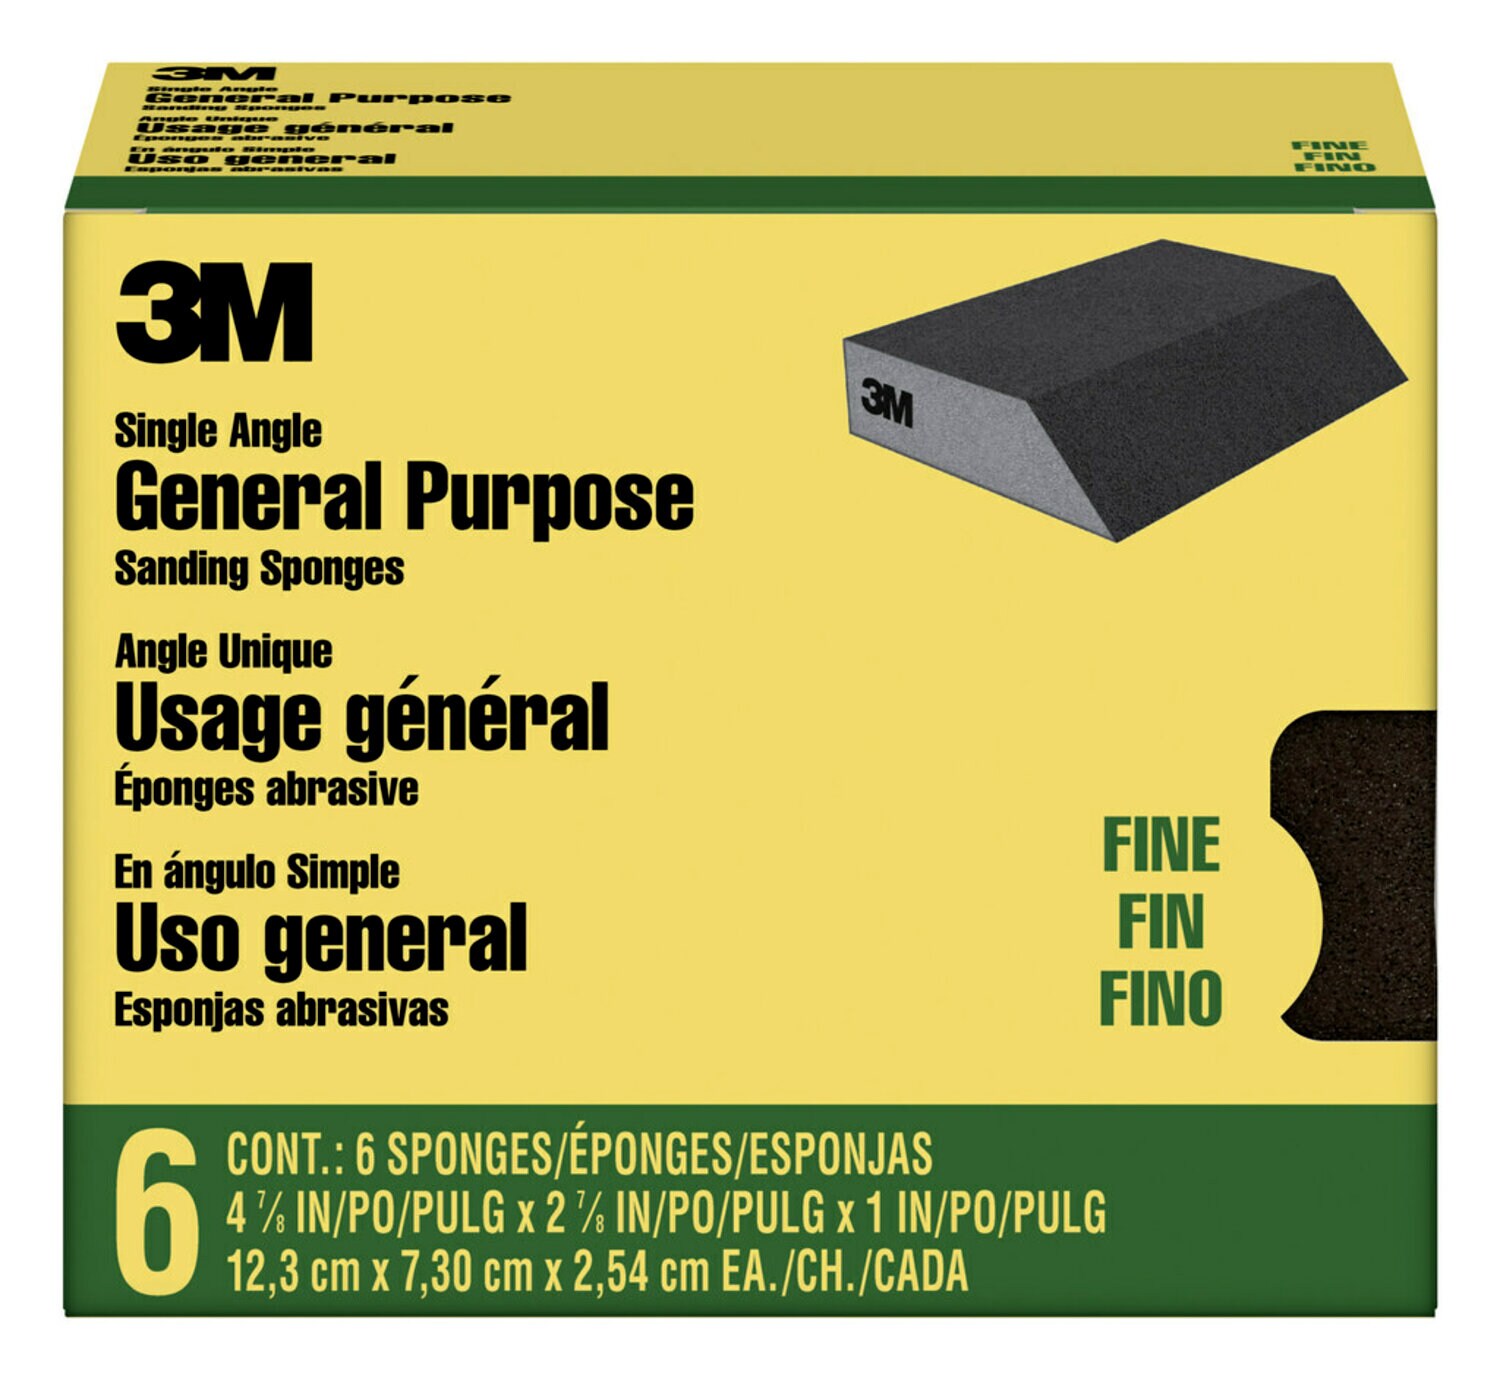 7100101532 - 3M General Purpose Sanding Sponge CP040-6P, Single Angle, 2 7/8 in x 4 7/8 in x 1 in, Fine, 6/pk, 4 pks/cs